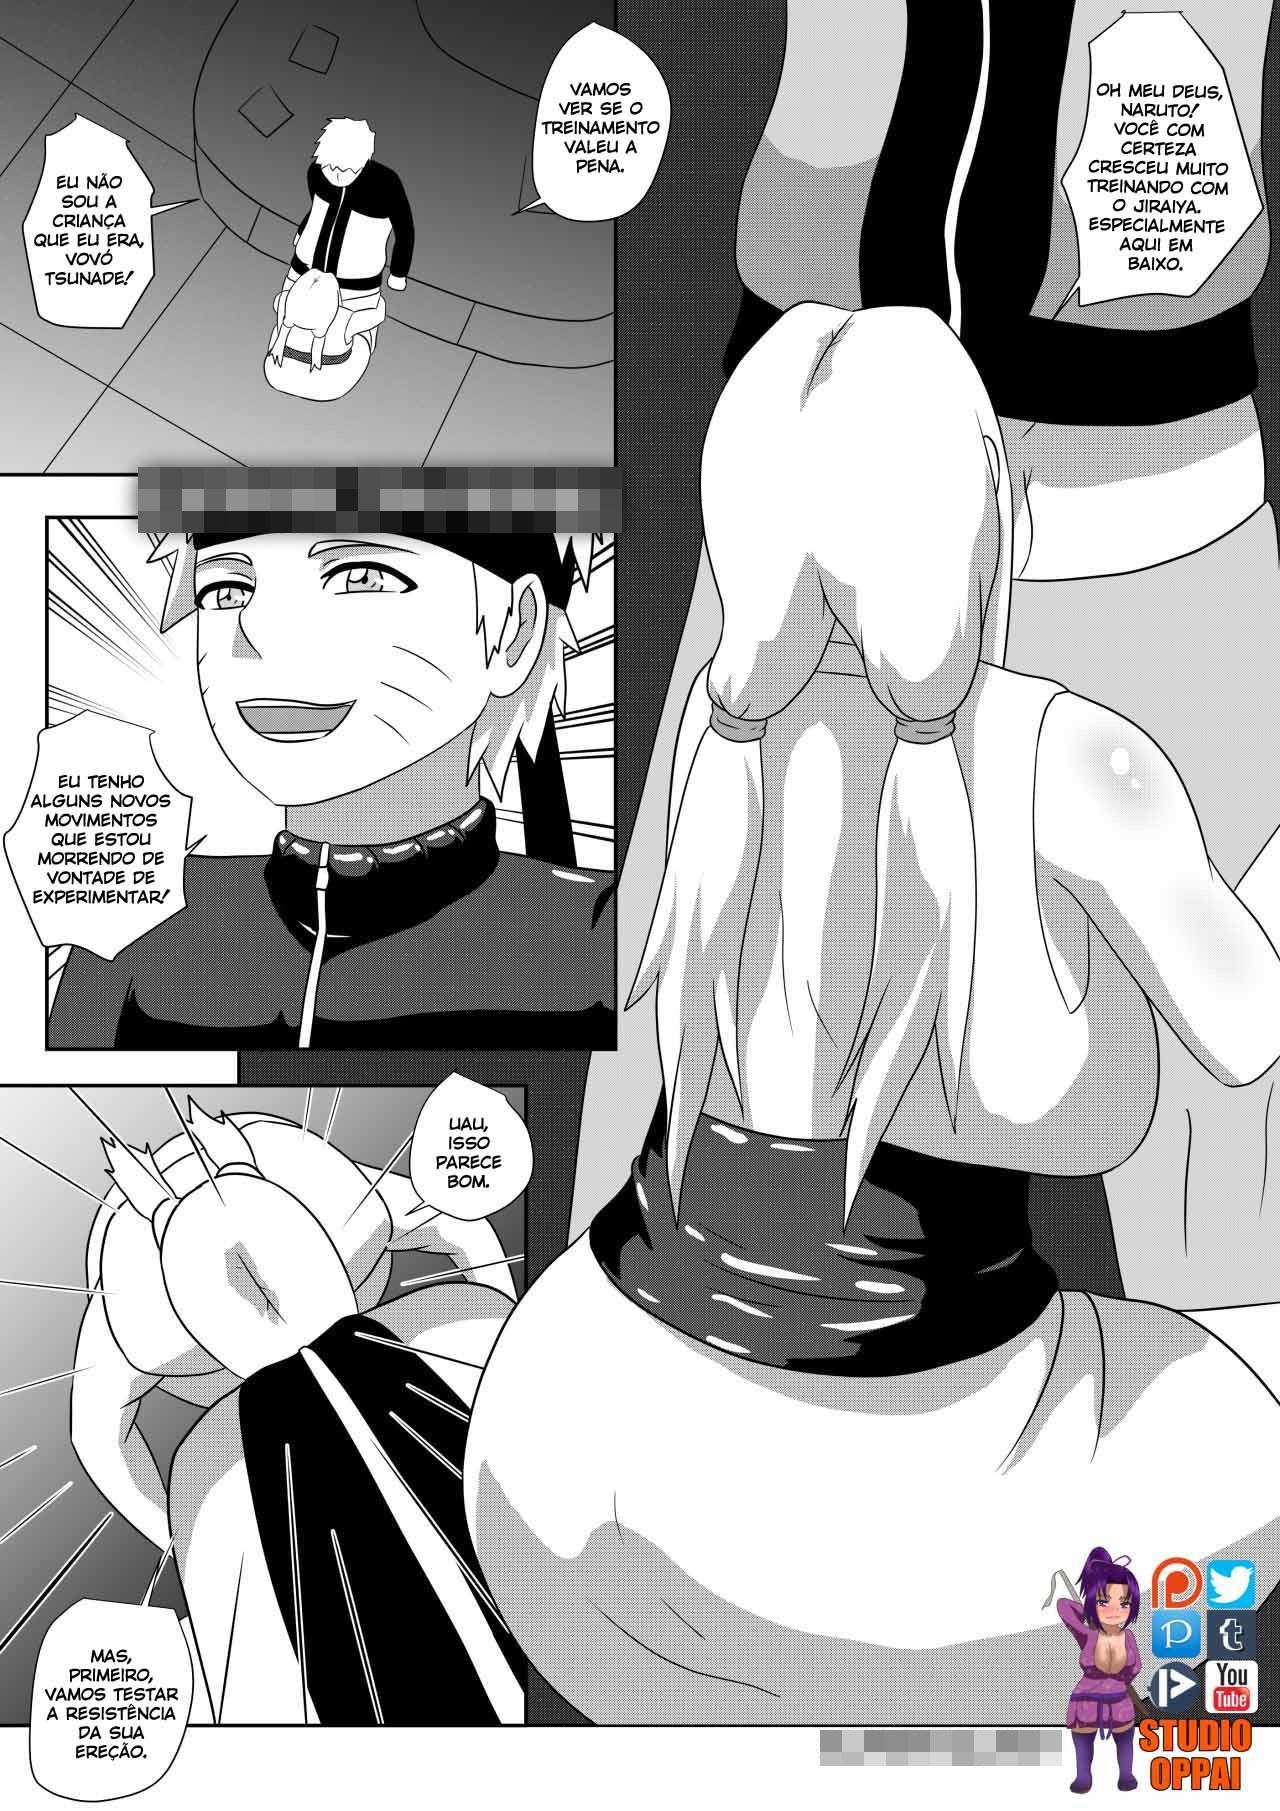 Naruto fazendo sexo com tsunade em quadrinhos